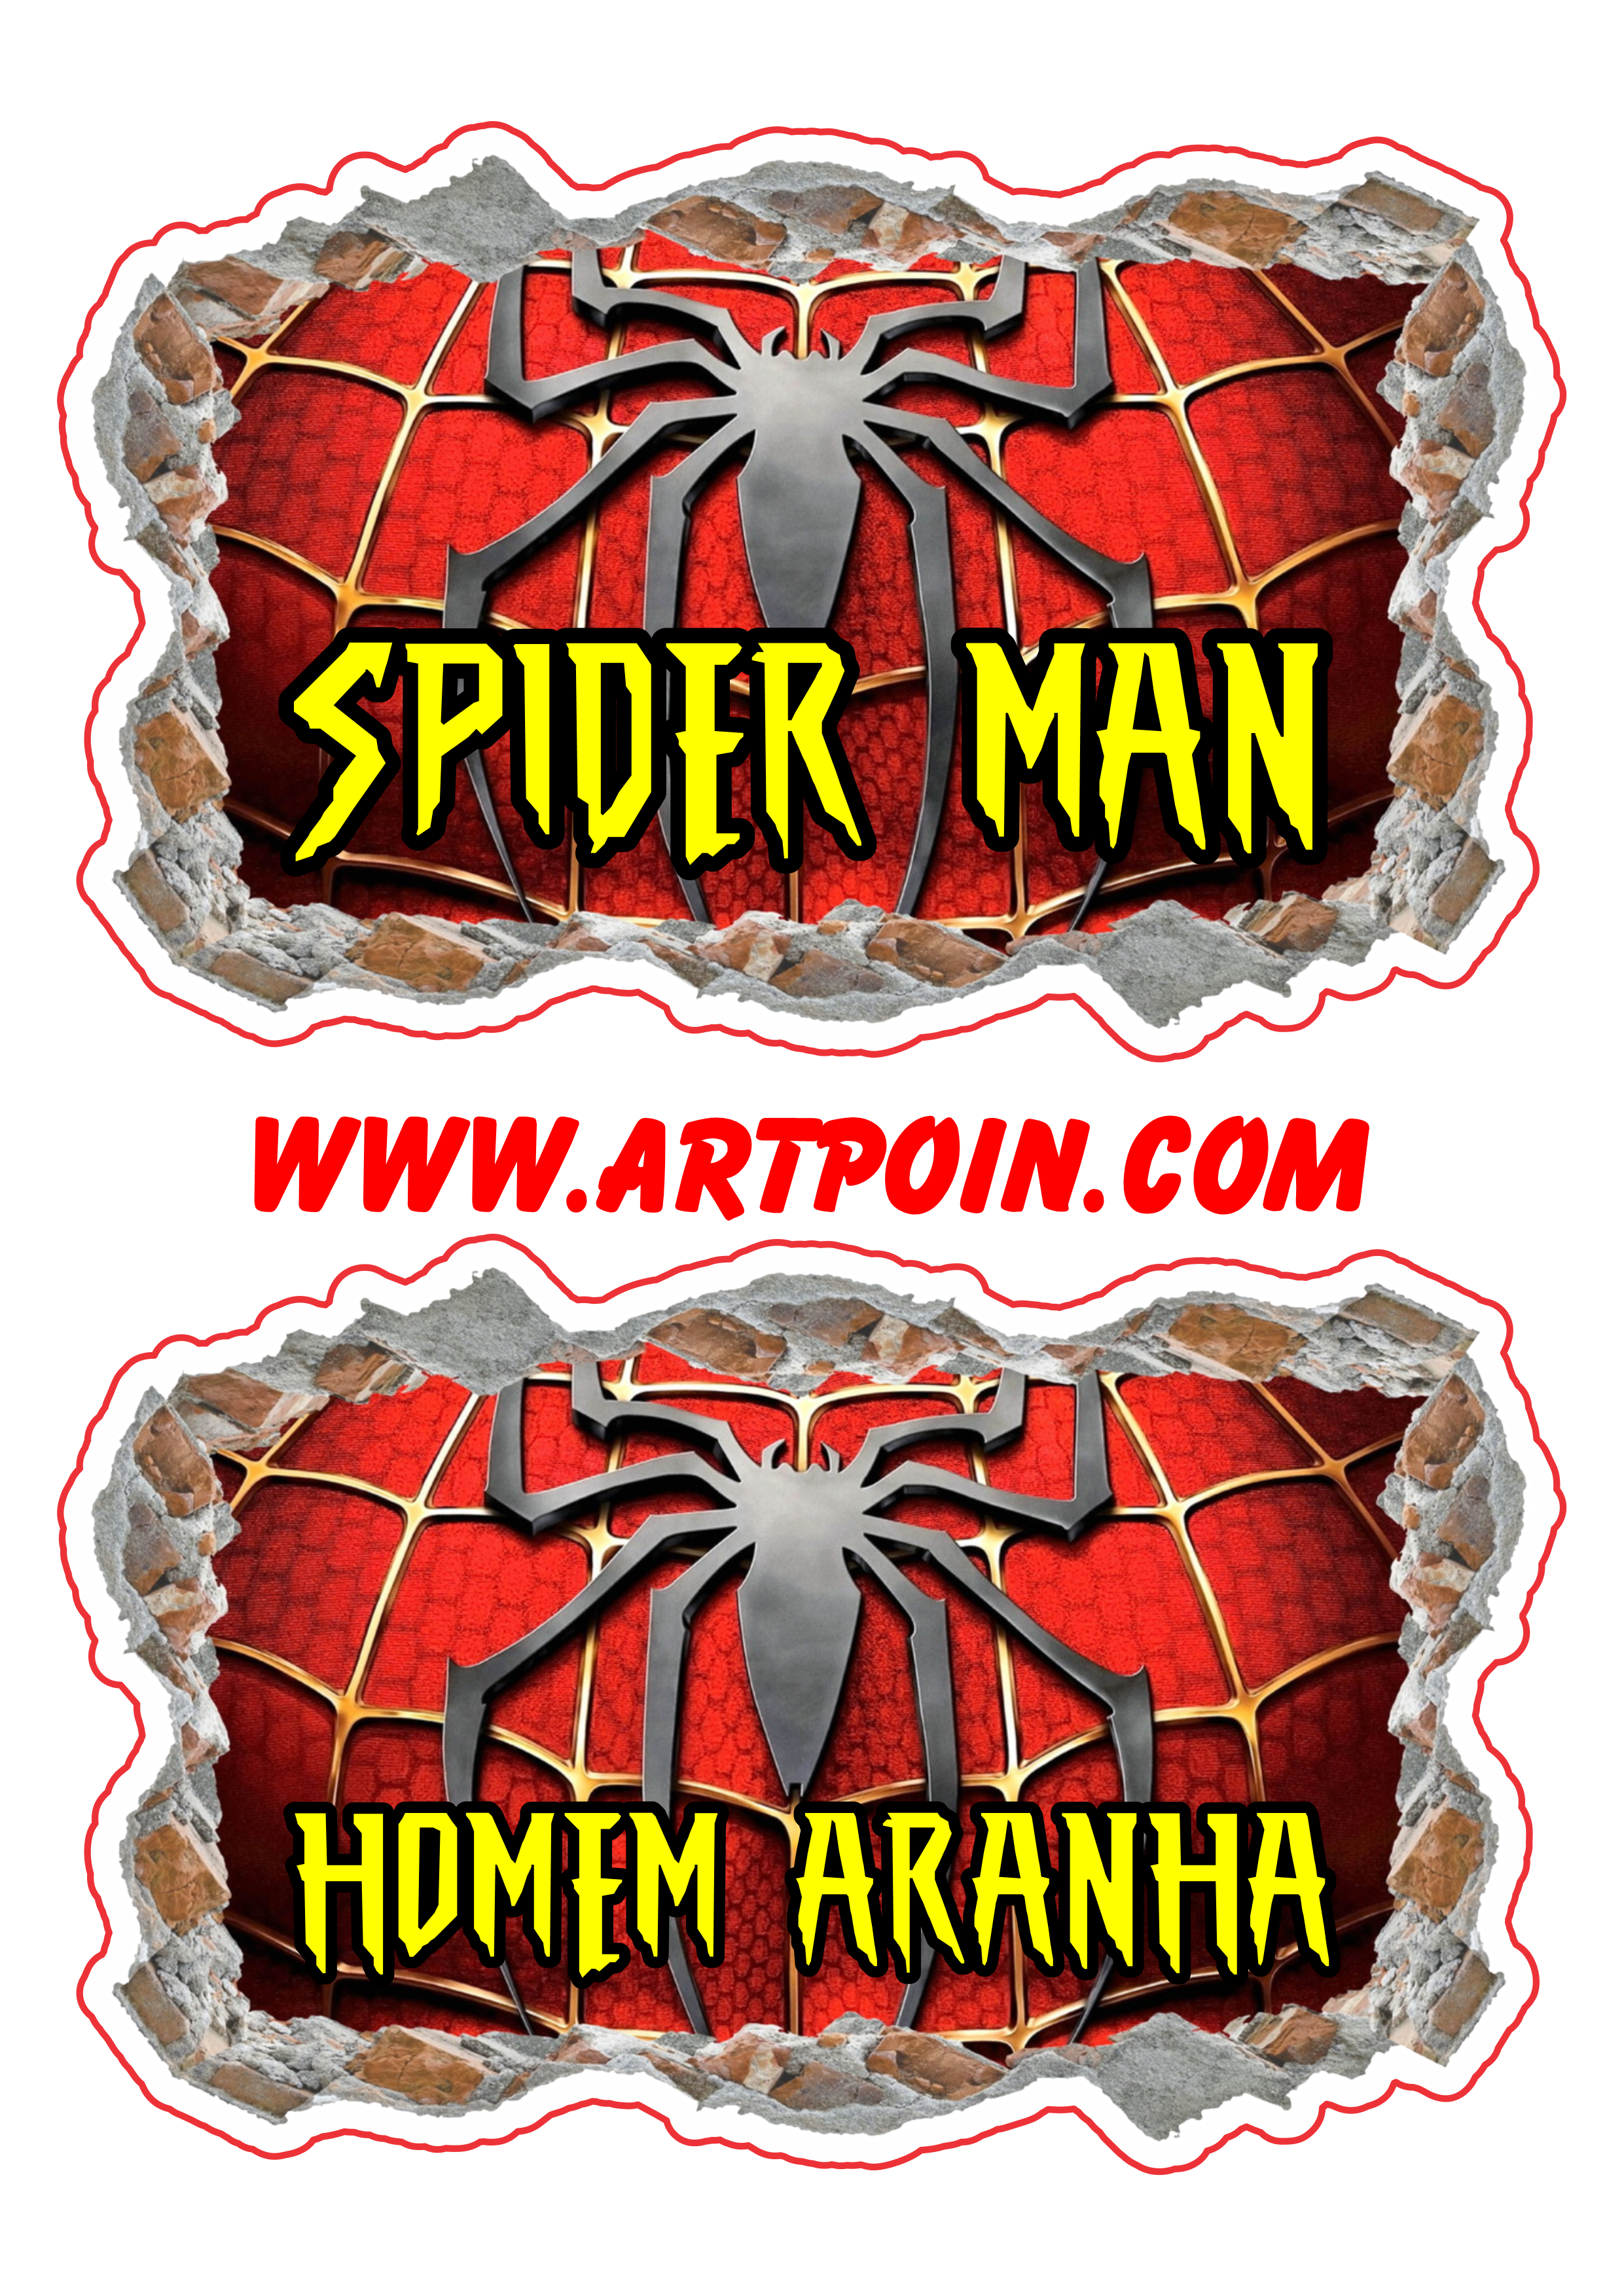 Homem aranha spider man simbolo desenho fundo transparente imagem png